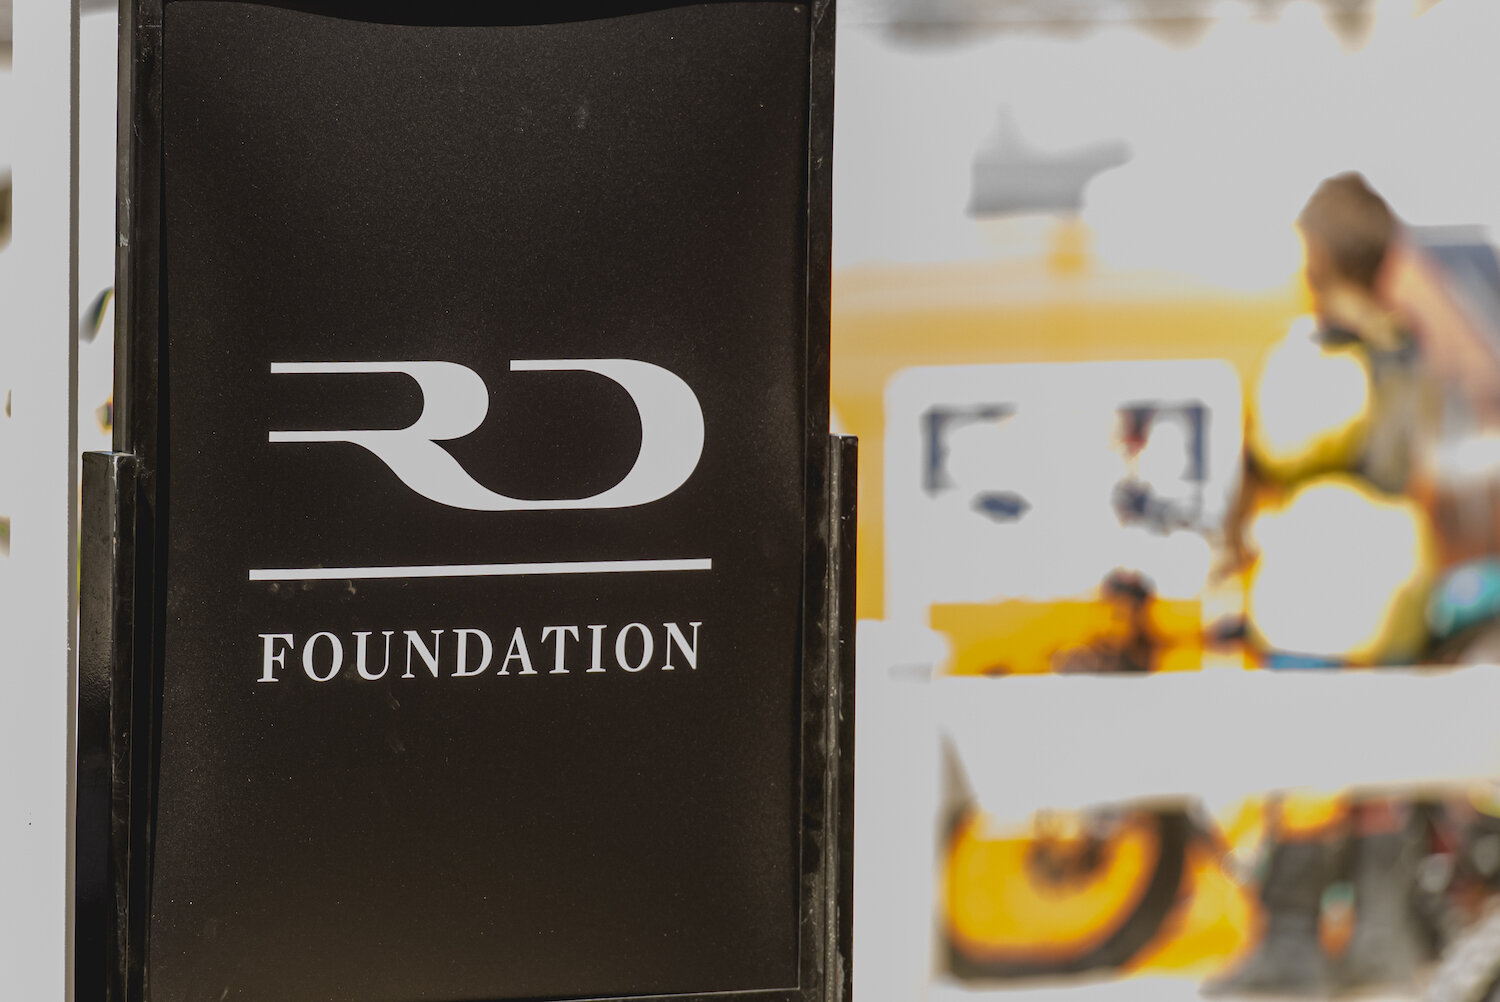 RD-Foundation-FoxRaceway-272.jpg